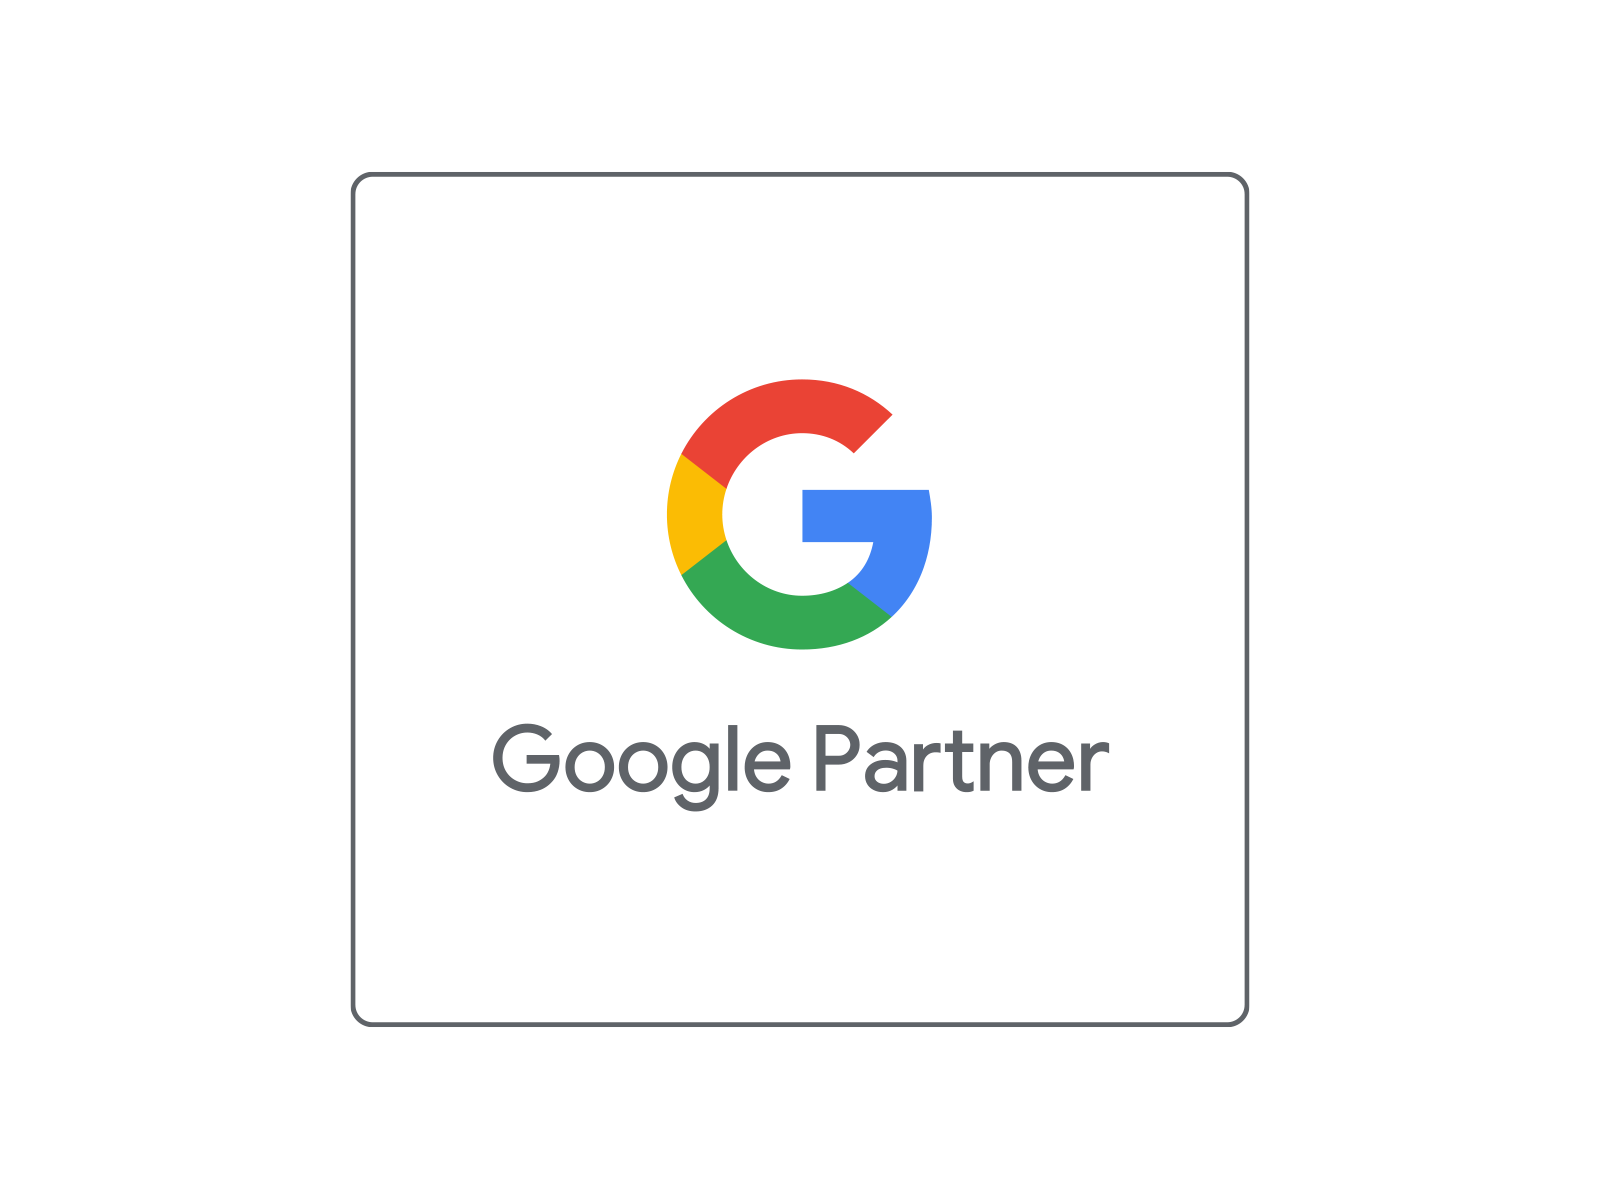 Google Partner.png